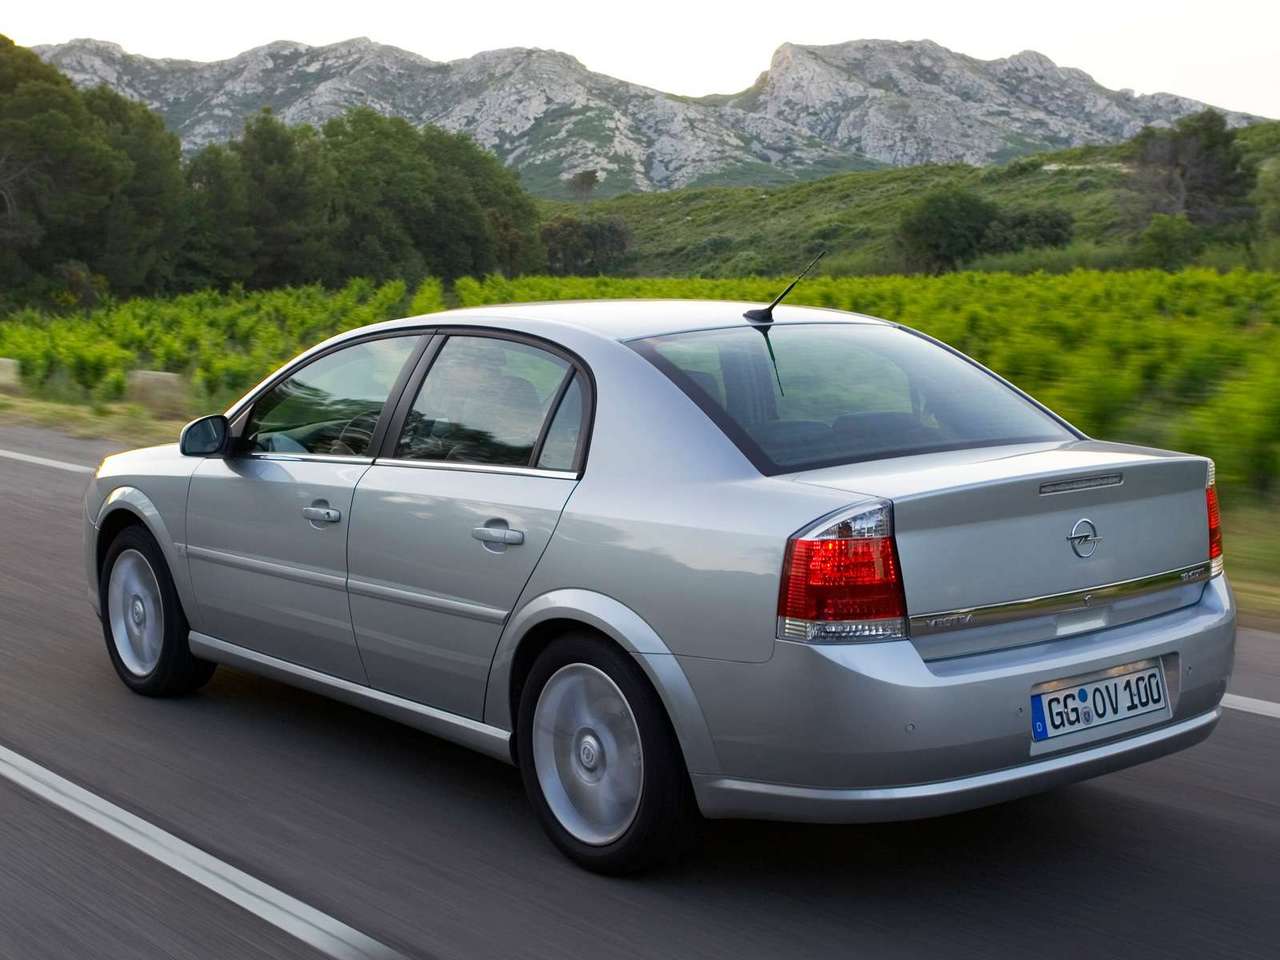 PodsumowujÄ…c: Opel Vectra C to samochÃ³d skierowany do rodzin,